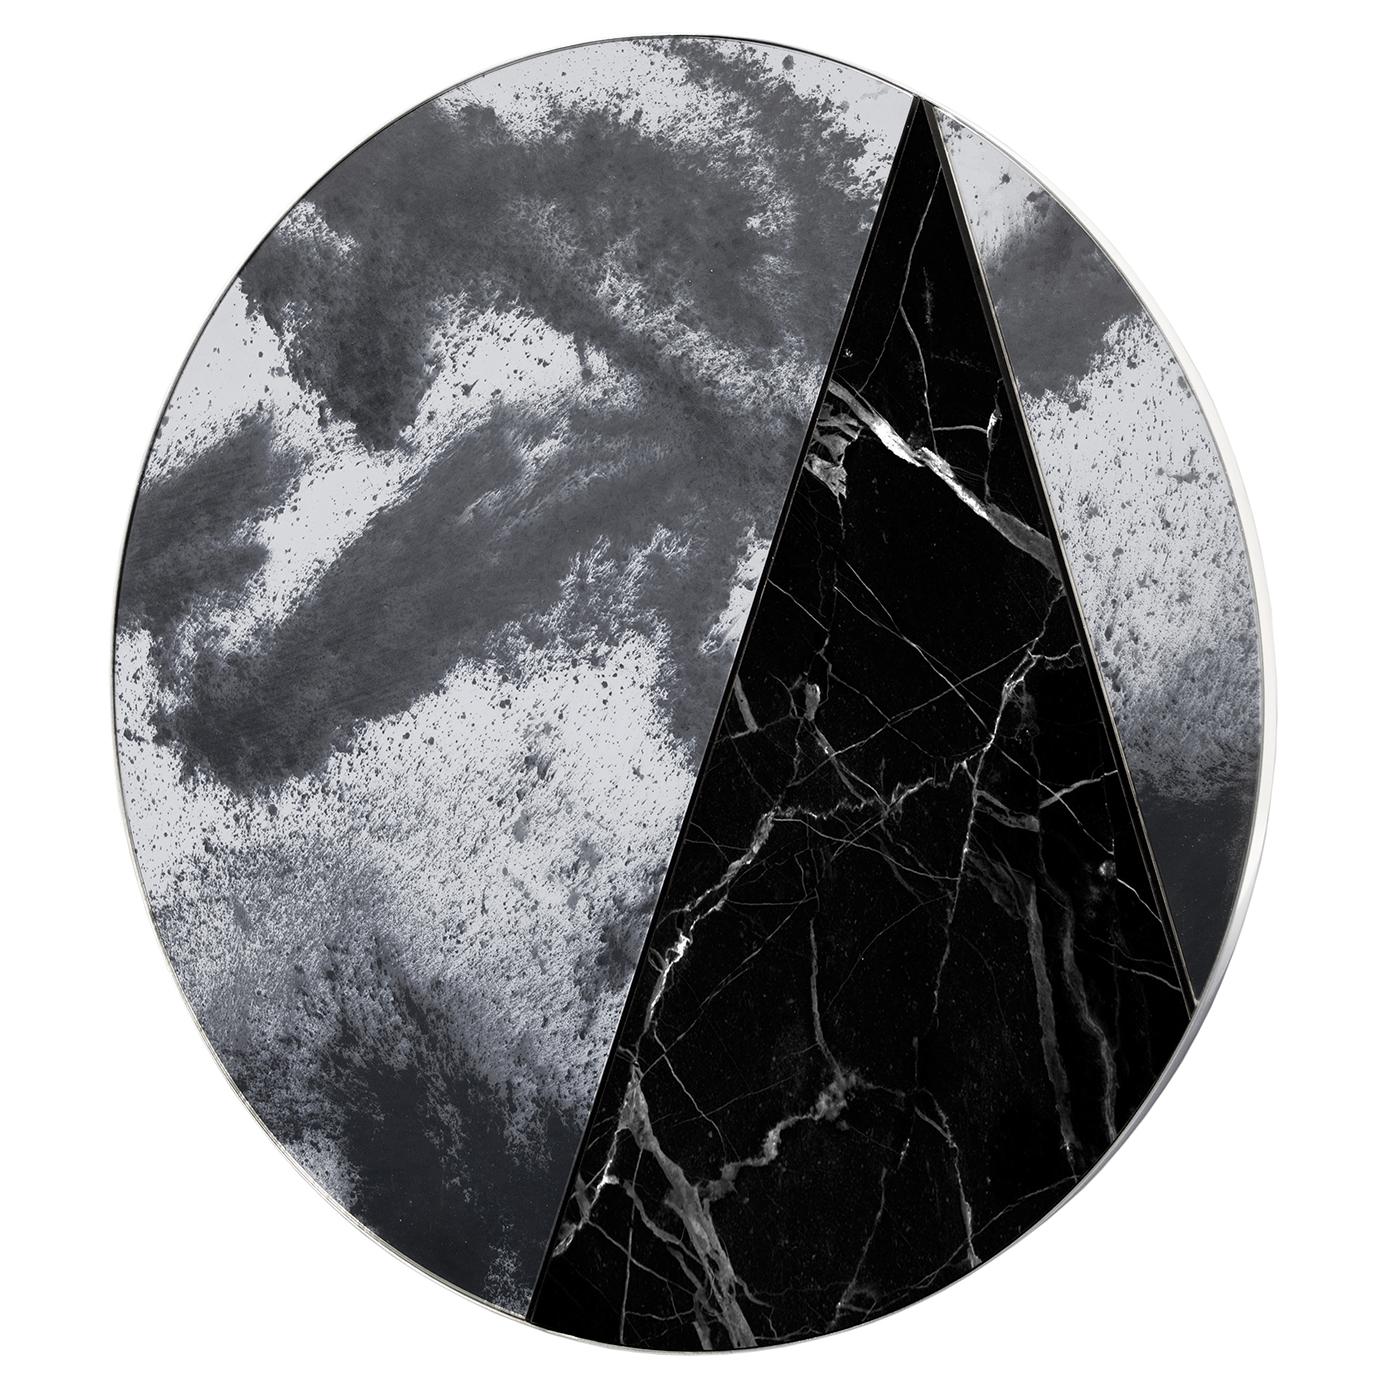 Pièce lunaire pour les espaces contemporains, le miroir Itinera Res Lunare V est réalisé en collaboration avec la verrerie Antique Mirror de Sienne. Sur une base en acier inoxydable, des éclats de verre encadrent un morceau de marbre Marquinia chic,